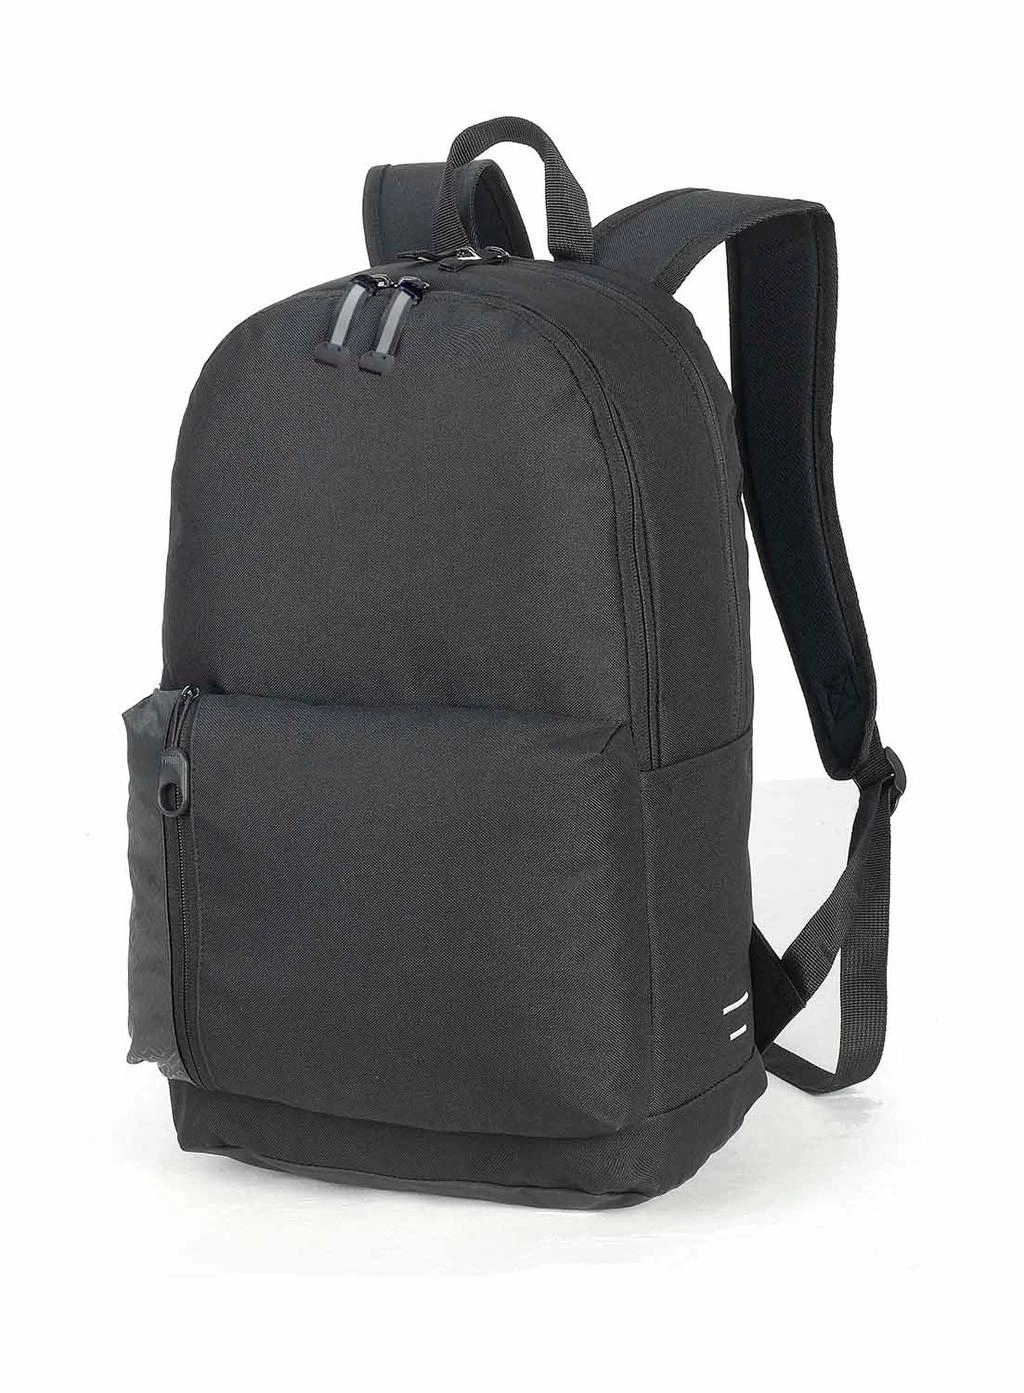 Plymouth Students Backpack zum Besticken und Bedrucken in der Farbe Black mit Ihren Logo, Schriftzug oder Motiv.